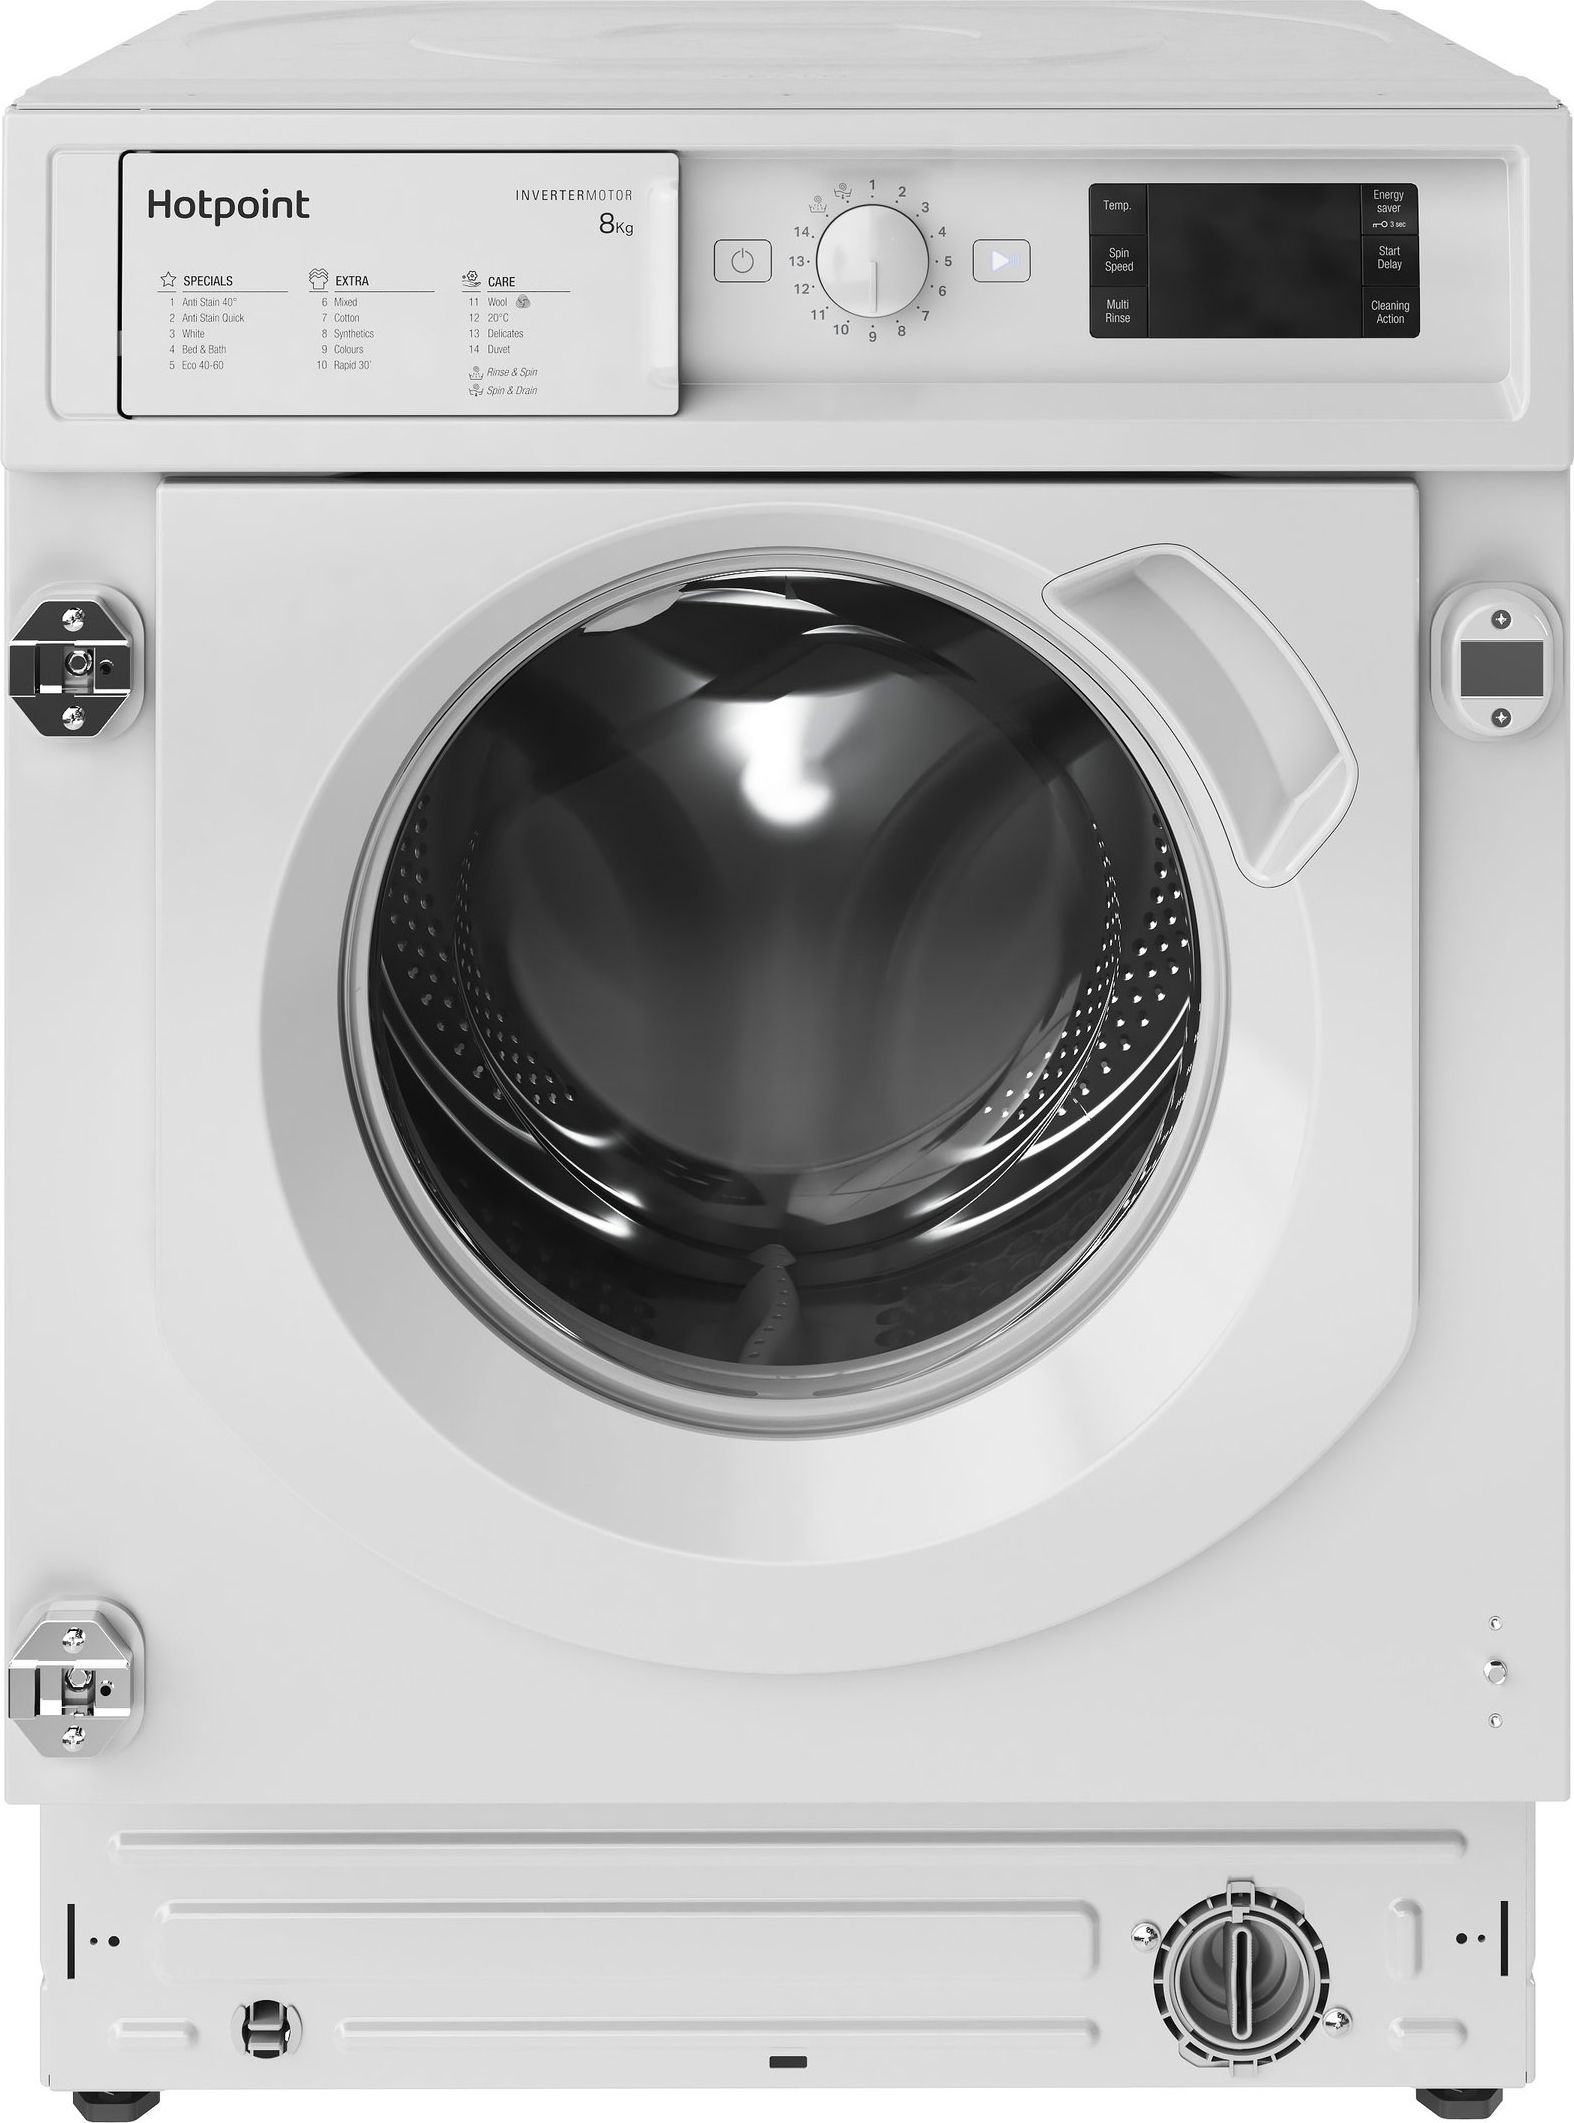 Hotpoint BIWMHG81485UK Integrated 8kg Washing Machine with 1400 rpm - White - B Rated, White